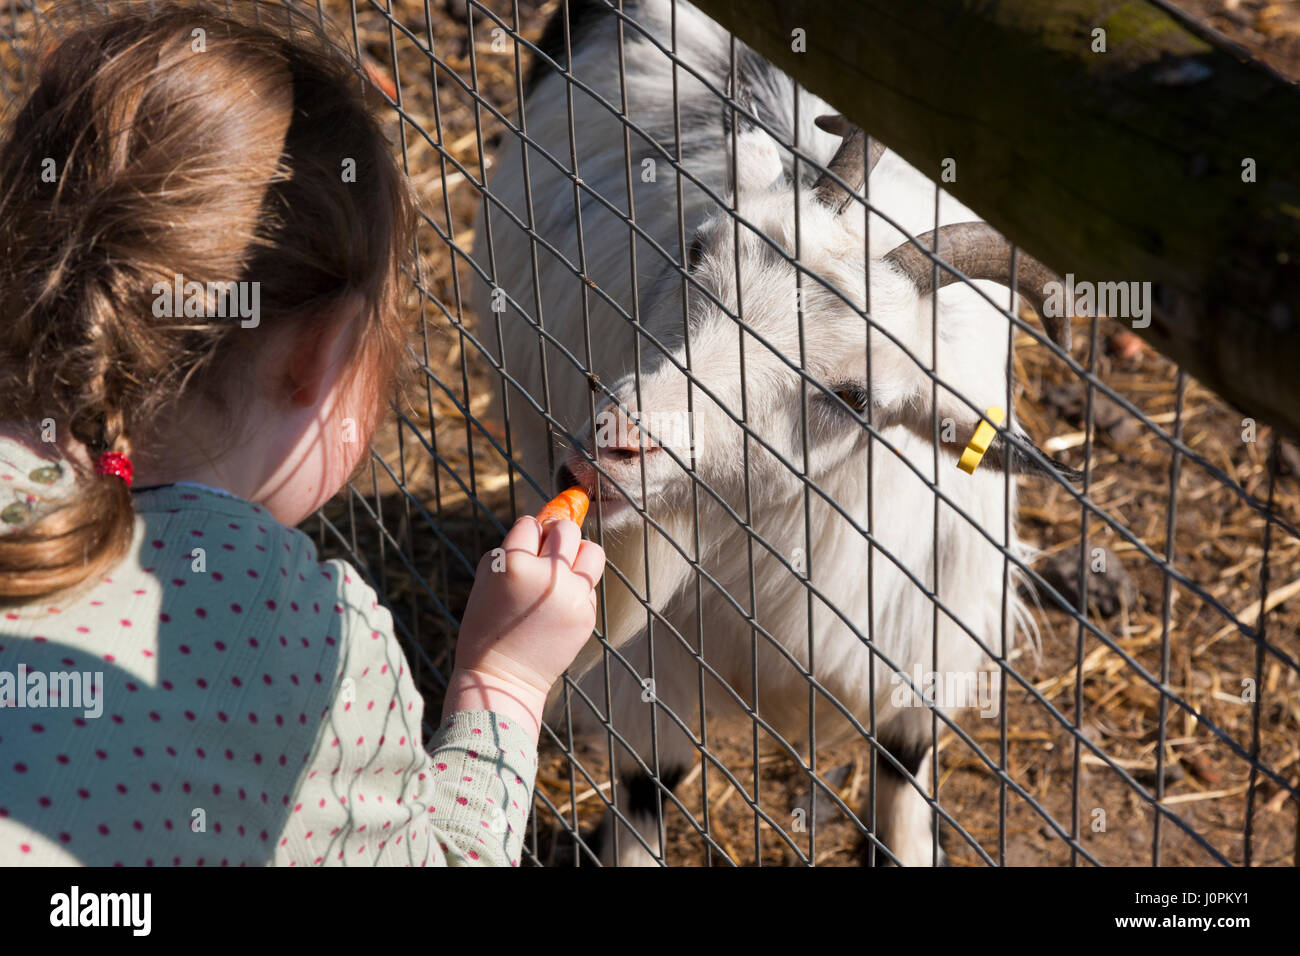 Familien / Besucher / Personen mit Kindern / Kinder / Kind füttern feeds essen – Karotten etc. – zu Ziegen auf Glebe Farm, Astbury, Congleton, Cheshire UK. Stockfoto